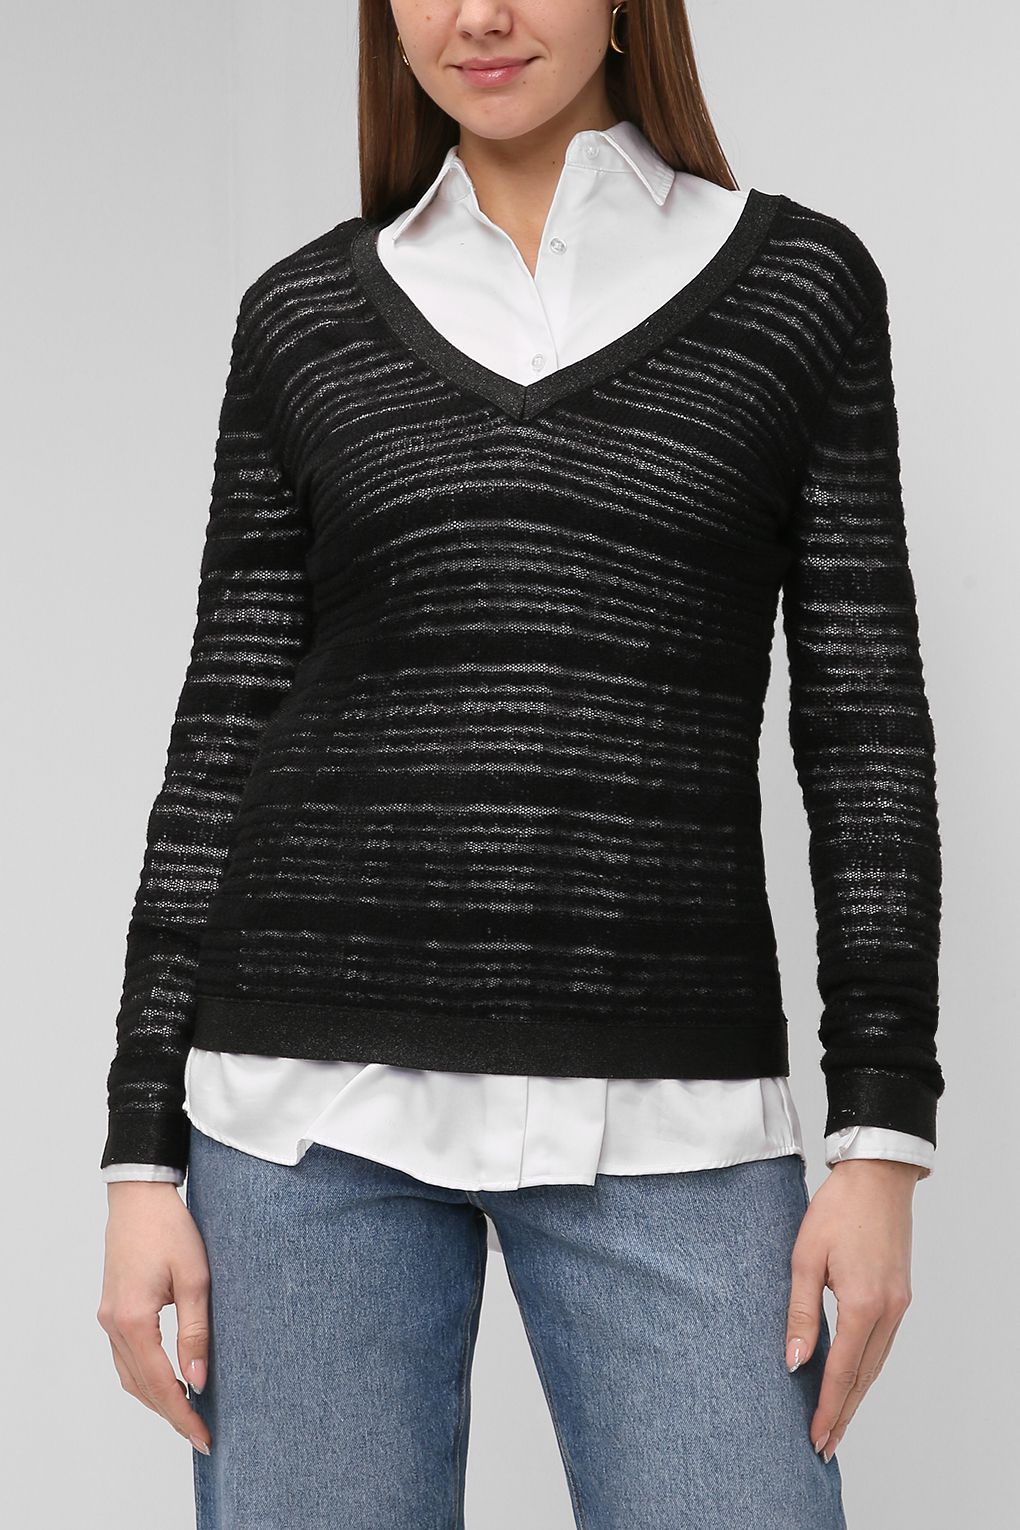 Пуловер женский PAOLA RAY PR121-11009 черный S